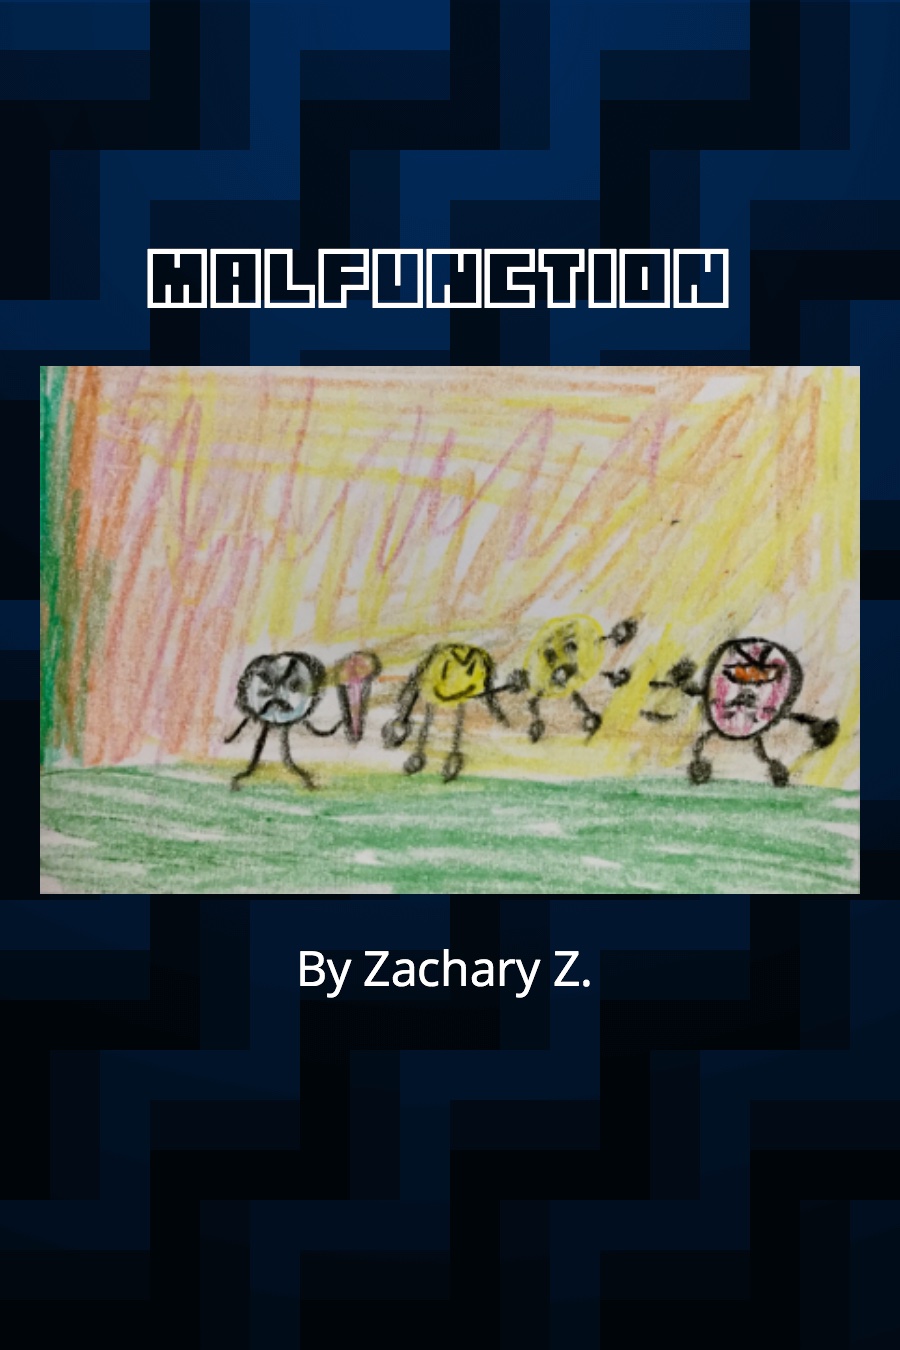 Malfunction by Zachary Z